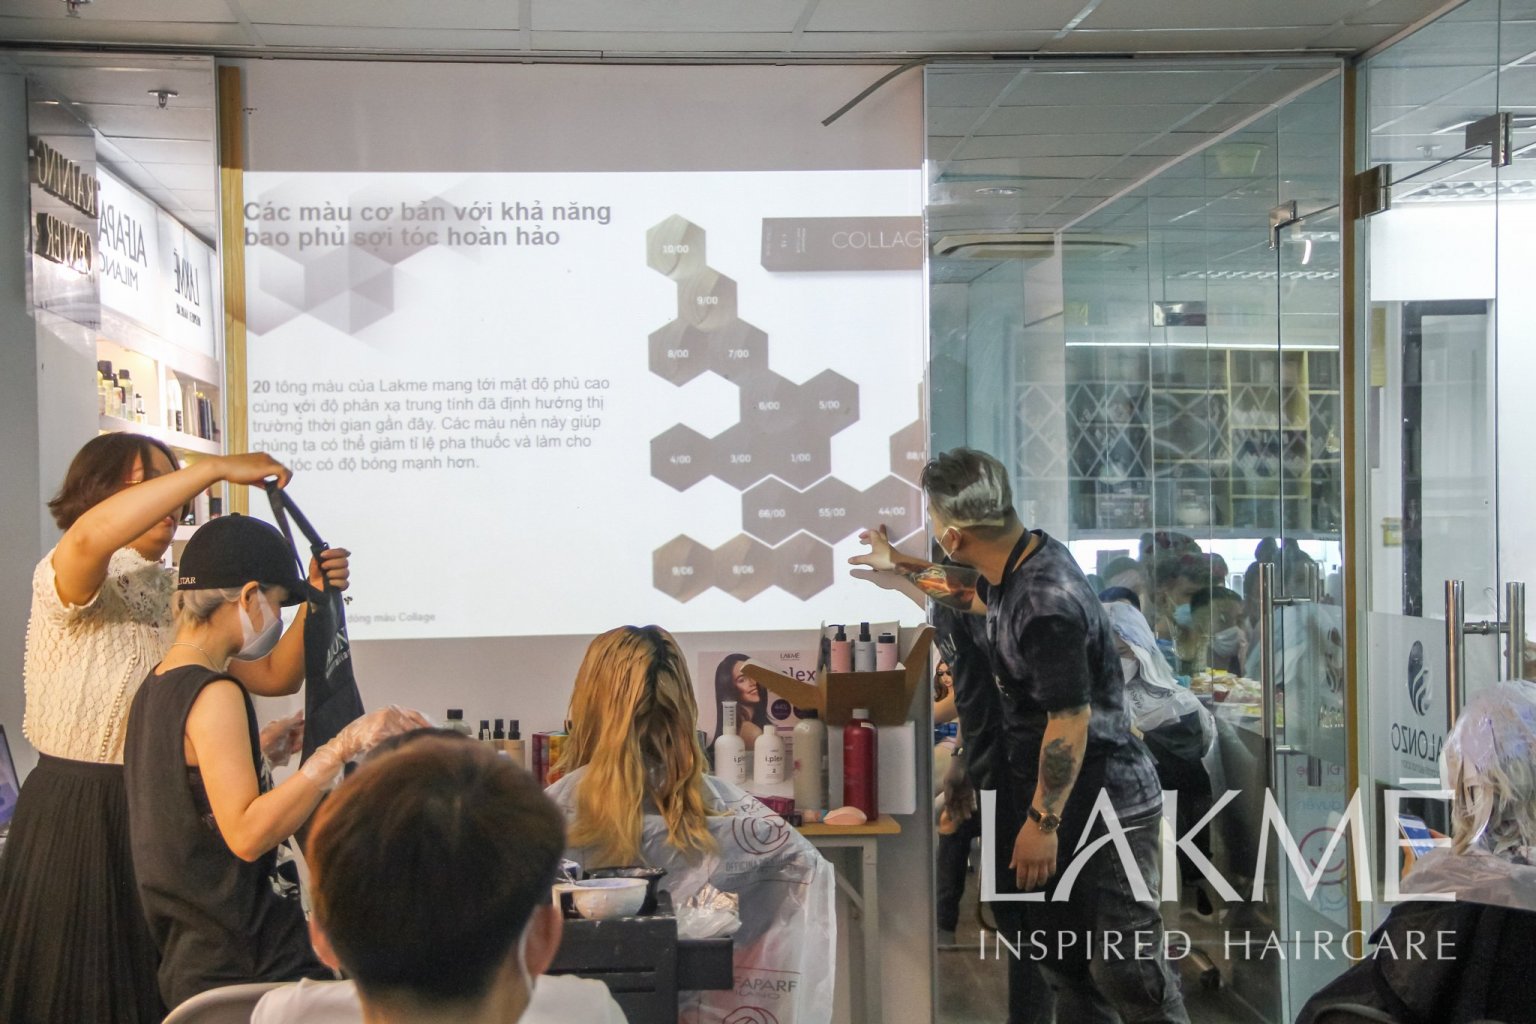 “Bật mí” quý giá về màu nhuộm đỉnh cao trong Technical Workshop Lakme 2022 tại Hà Nội